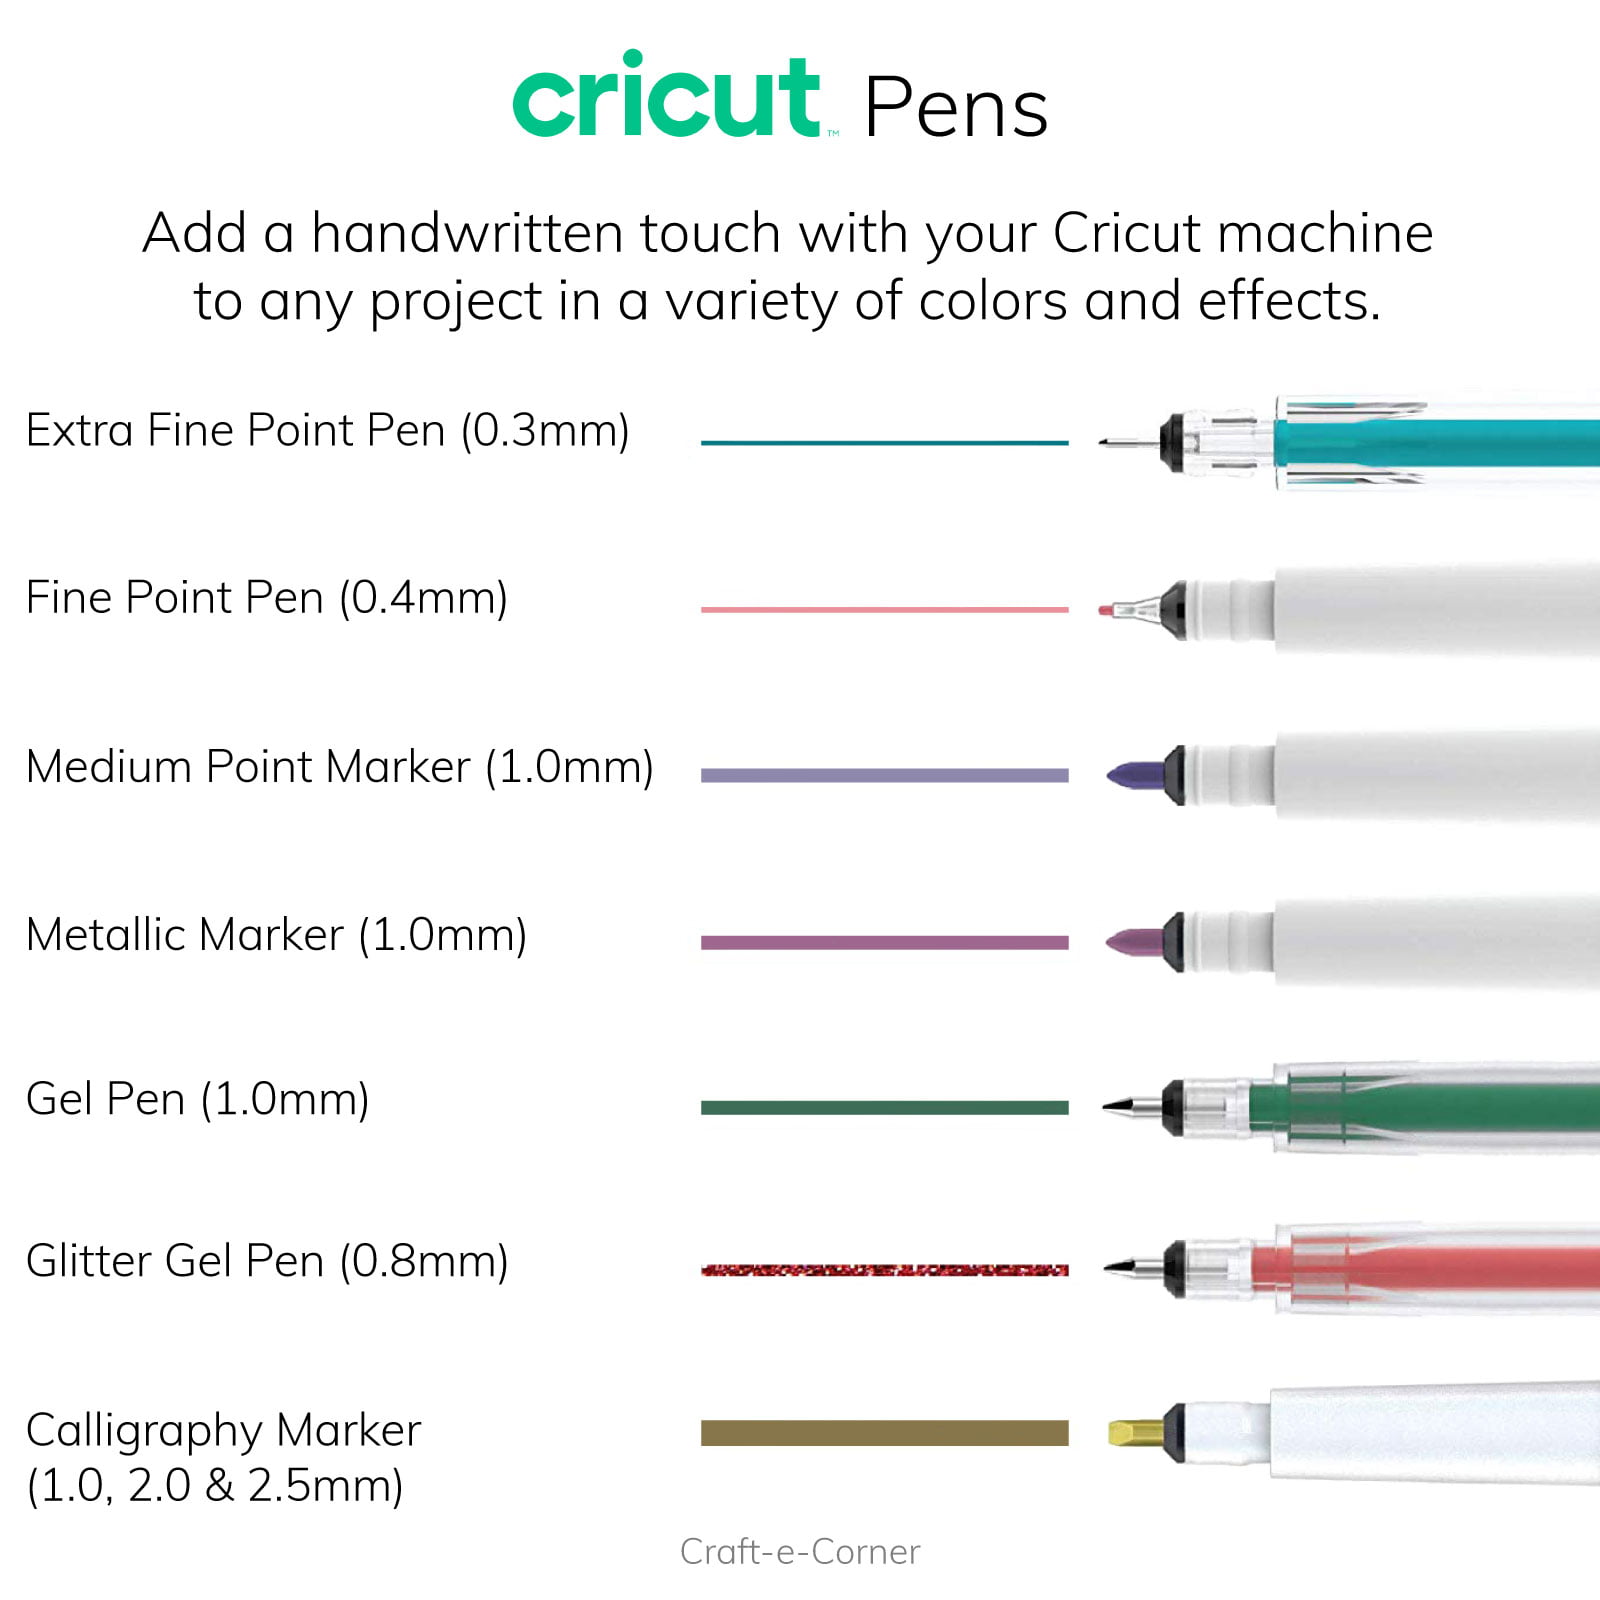 Ultimate Fine Point Pen Set 30 - Cricut